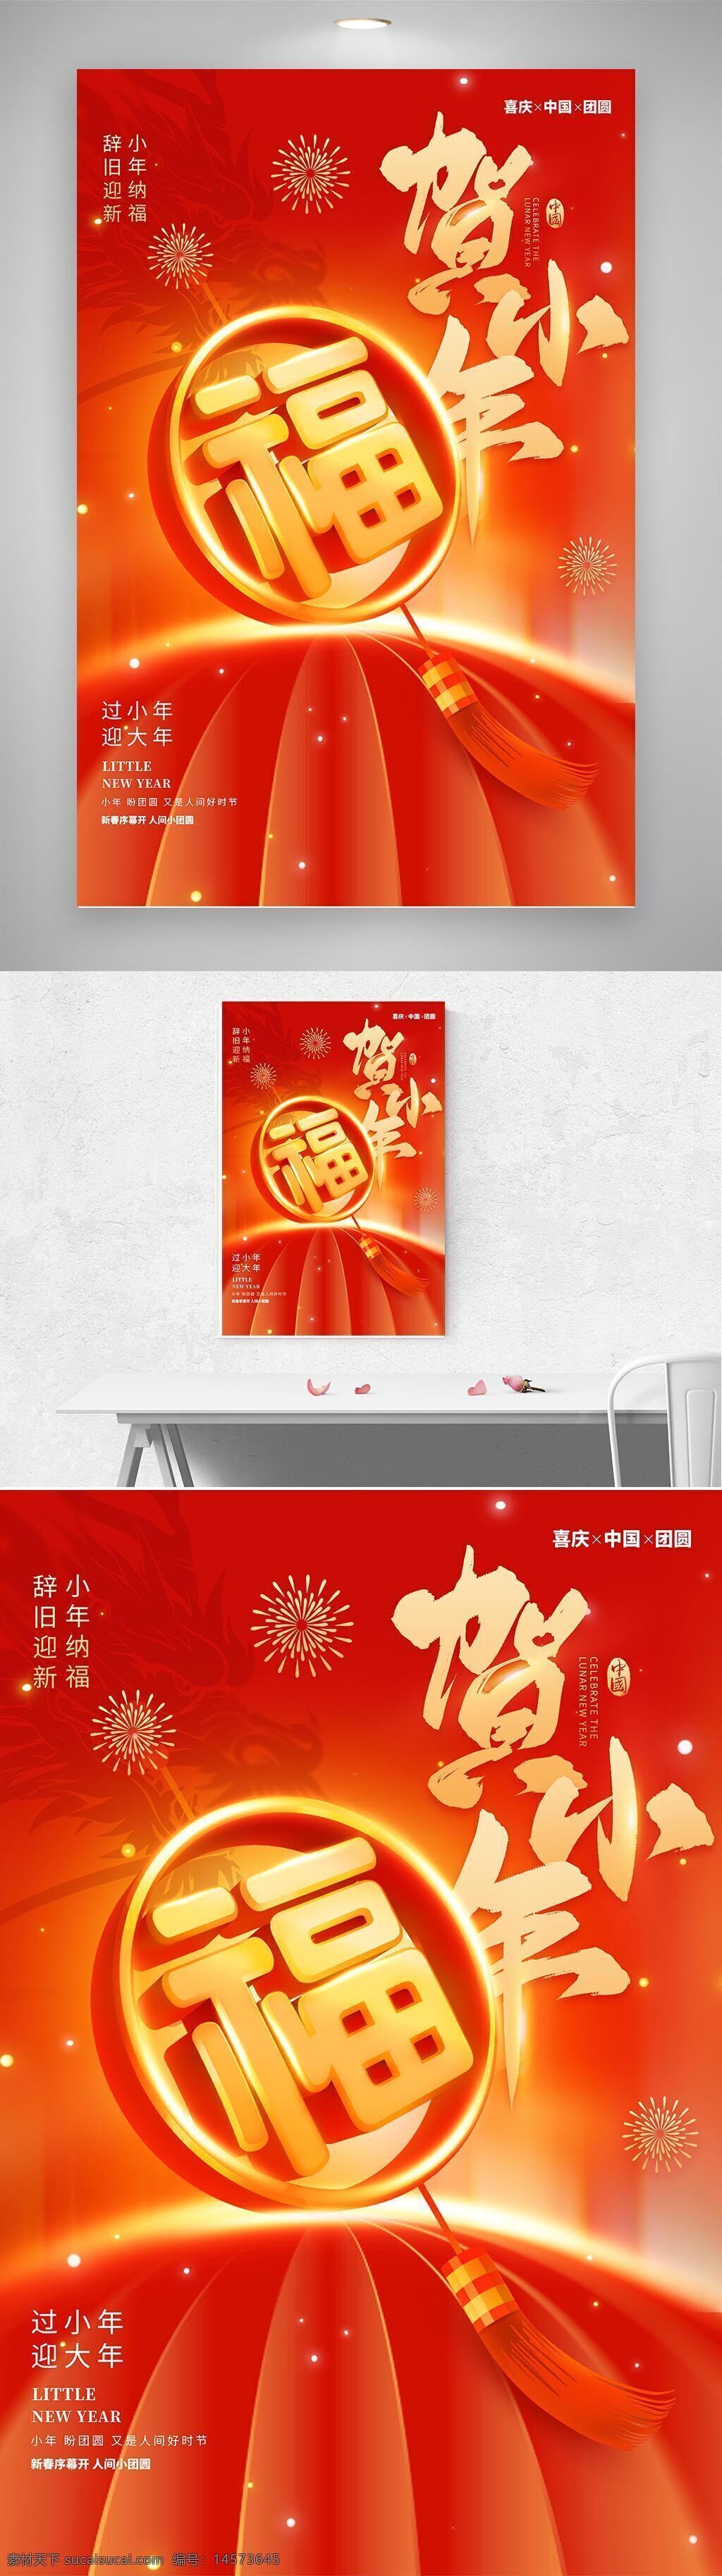 红色 贺小年 福字 节日 祝福 海报